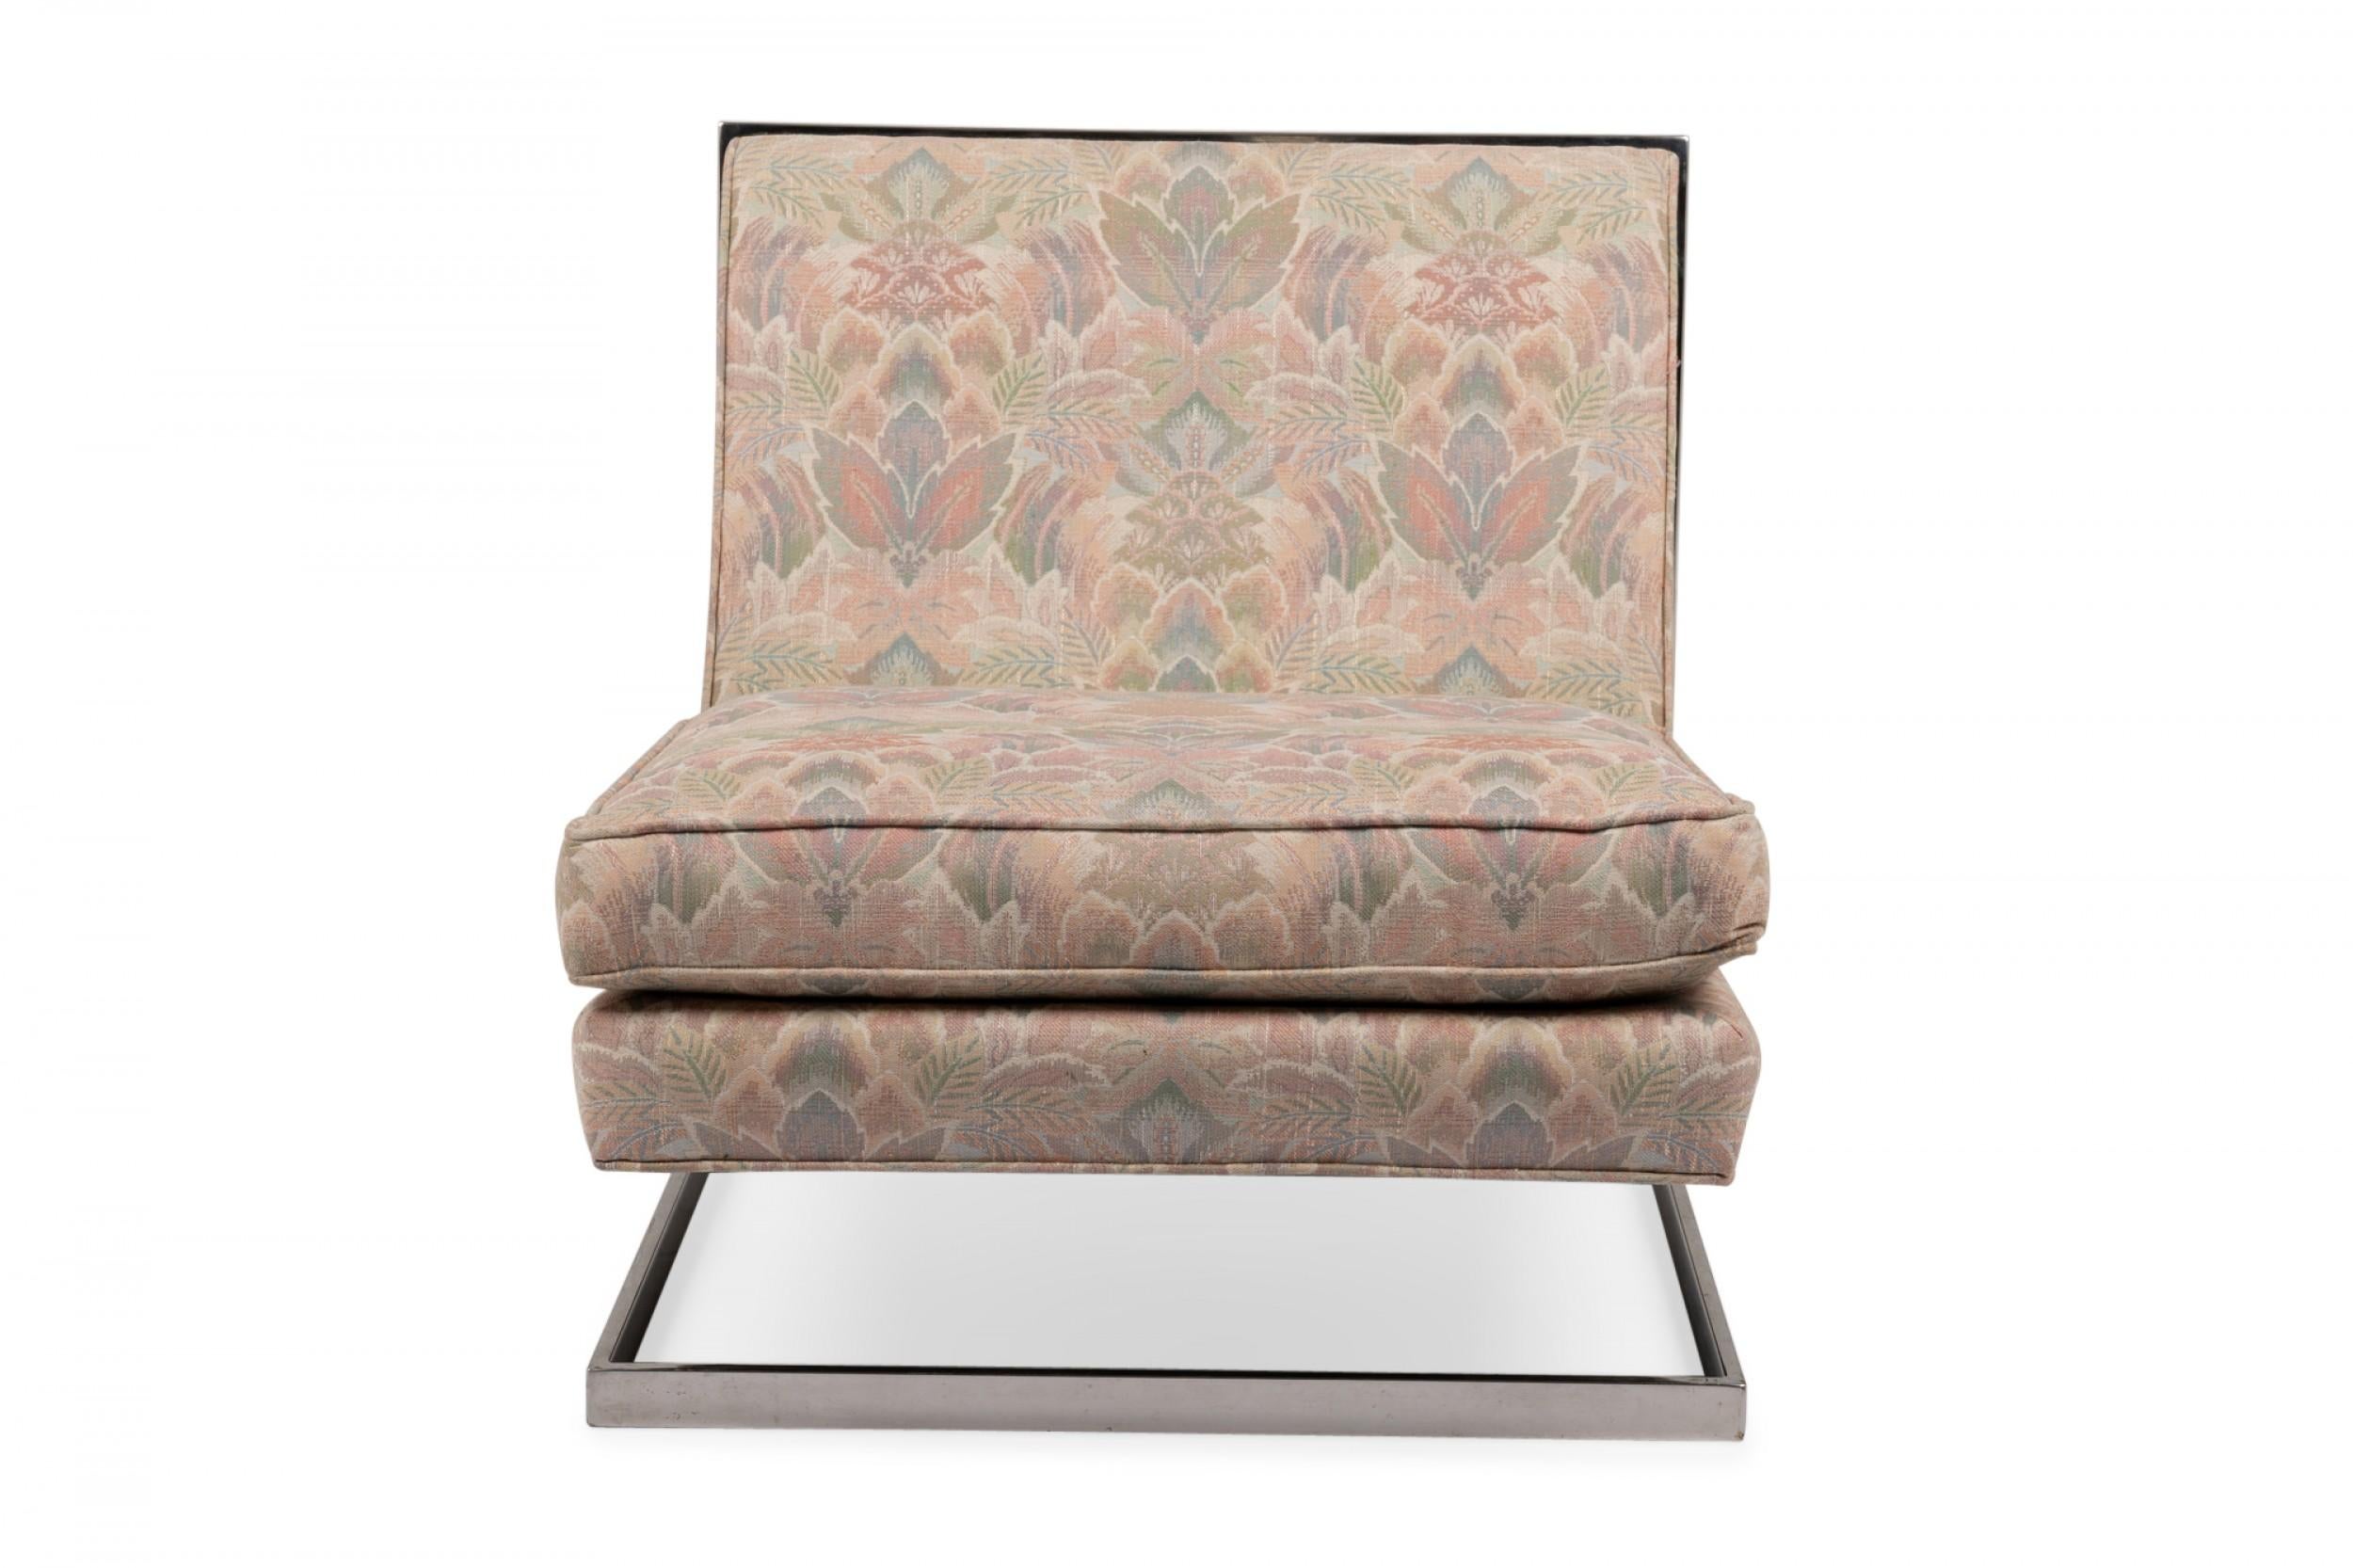 Chaise pantoufle flottante américaine Mid-Century, tapissée d'un tissu floral rose, vert et beige avec un coussin d'assise amovible, soutenue par une structure en tube carré chromé. (manière de MILO BAUGHMAN).
 